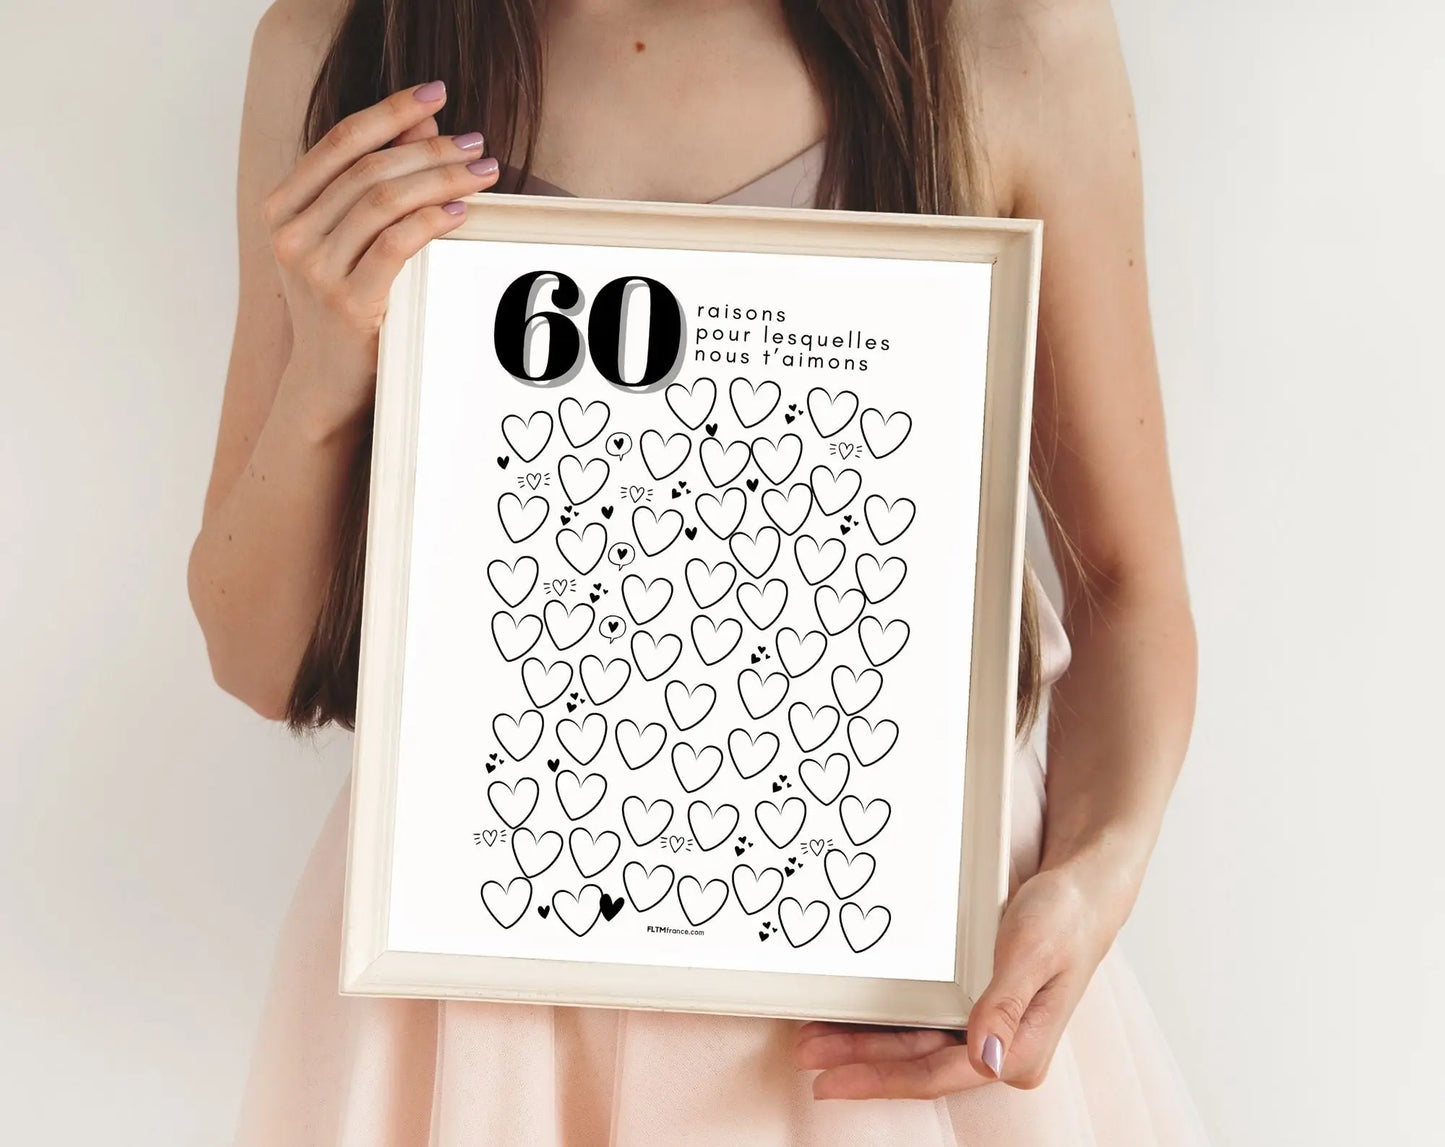 Affiche 60 raisons pour lesquelles nous t’aimons - Livre d'or 60 ans FLTMfrance